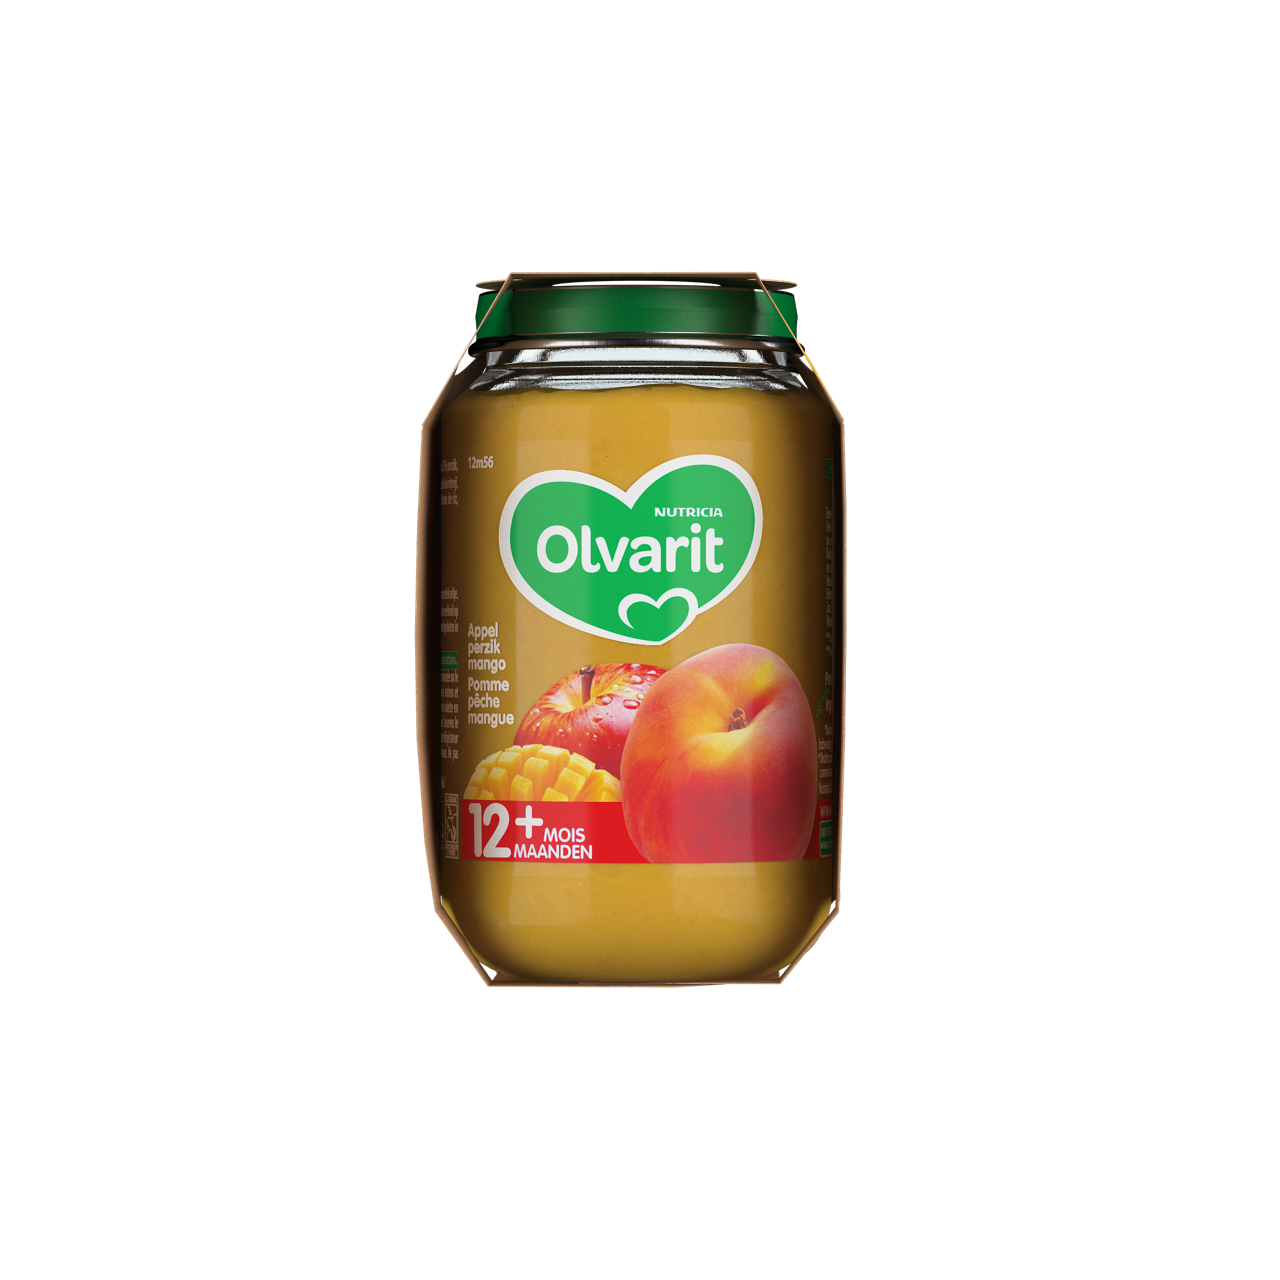 Olvarit Pomme Pêche Mangue. Consultez notre site web Olvarit.be pour plus d'info sur alimentation pour bébé et les produits Olvarit.